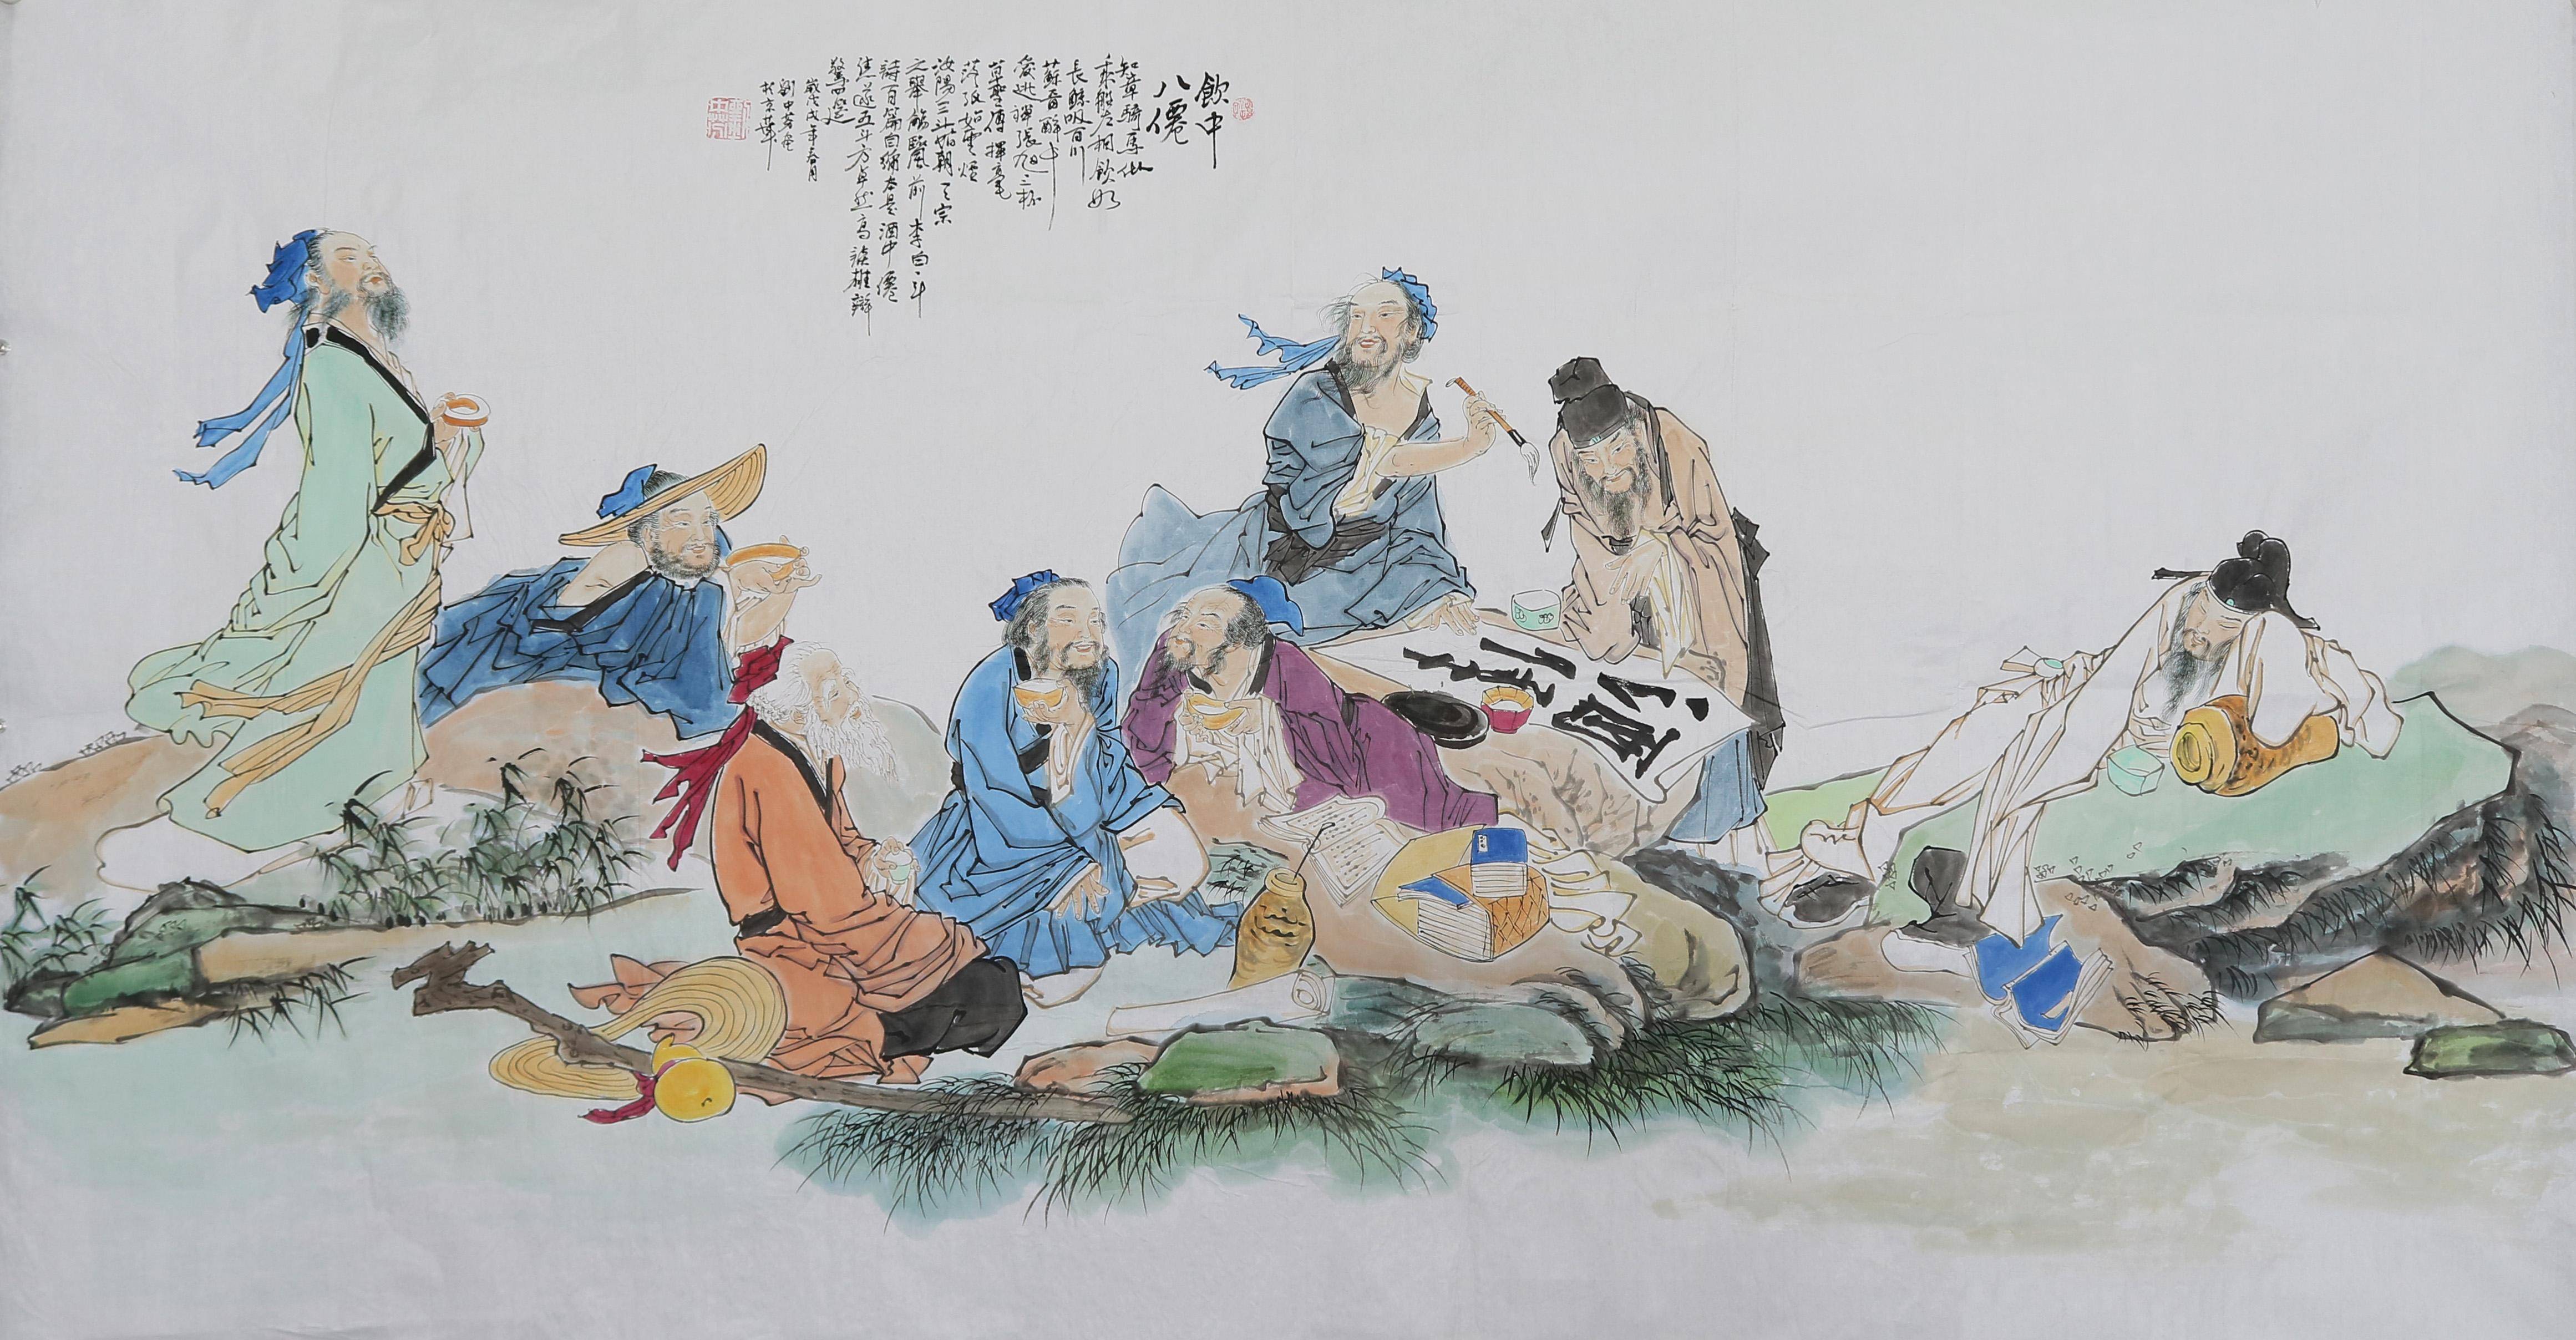 " 唐代诗人杜甫曾写下一首《饮中八仙歌》,运用白描的手法,将当时八位